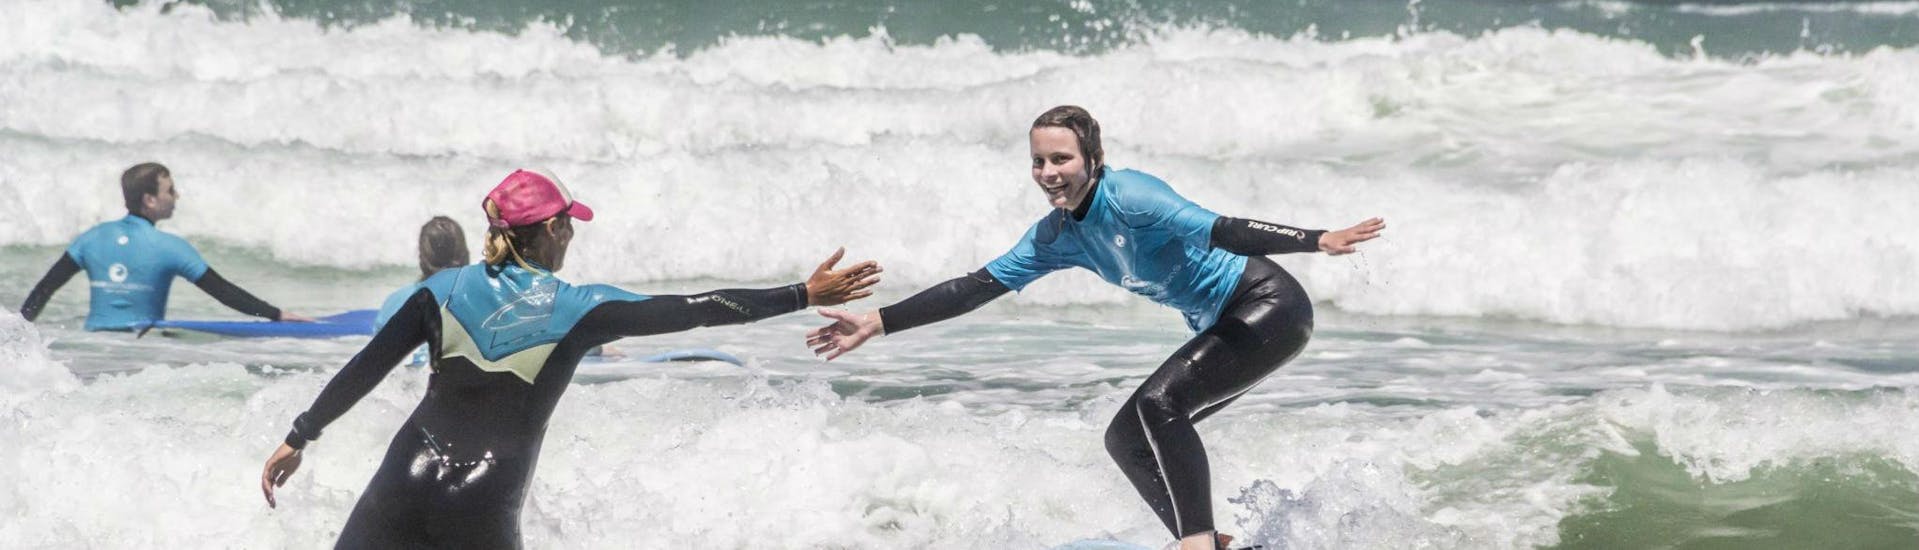 Curso de Surf en Sagres a partir de 12 años para todos los niveles.